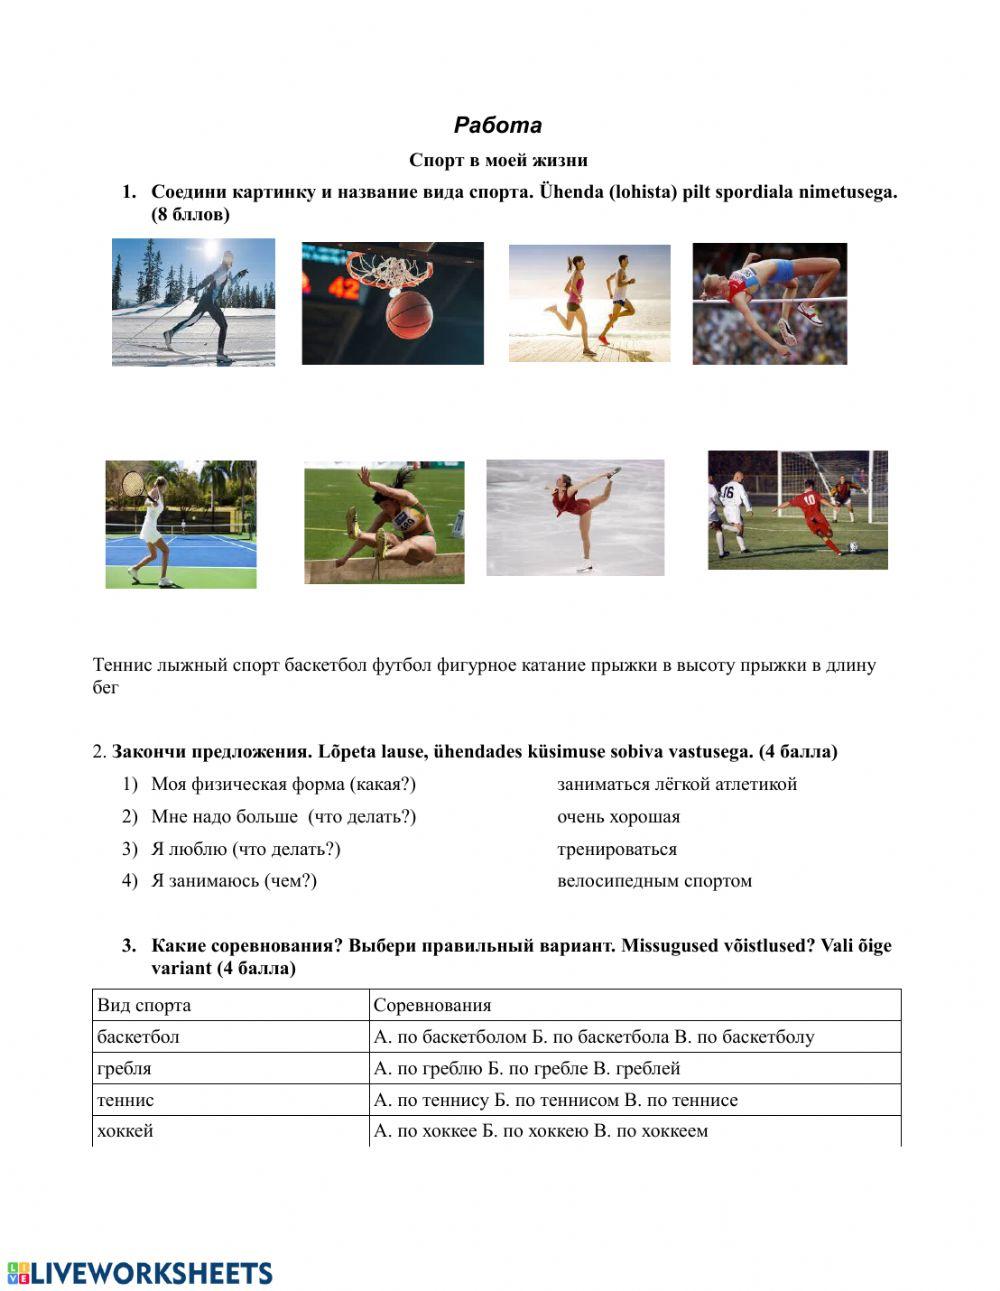 Спорт в моей жизни worksheet | Live Worksheets